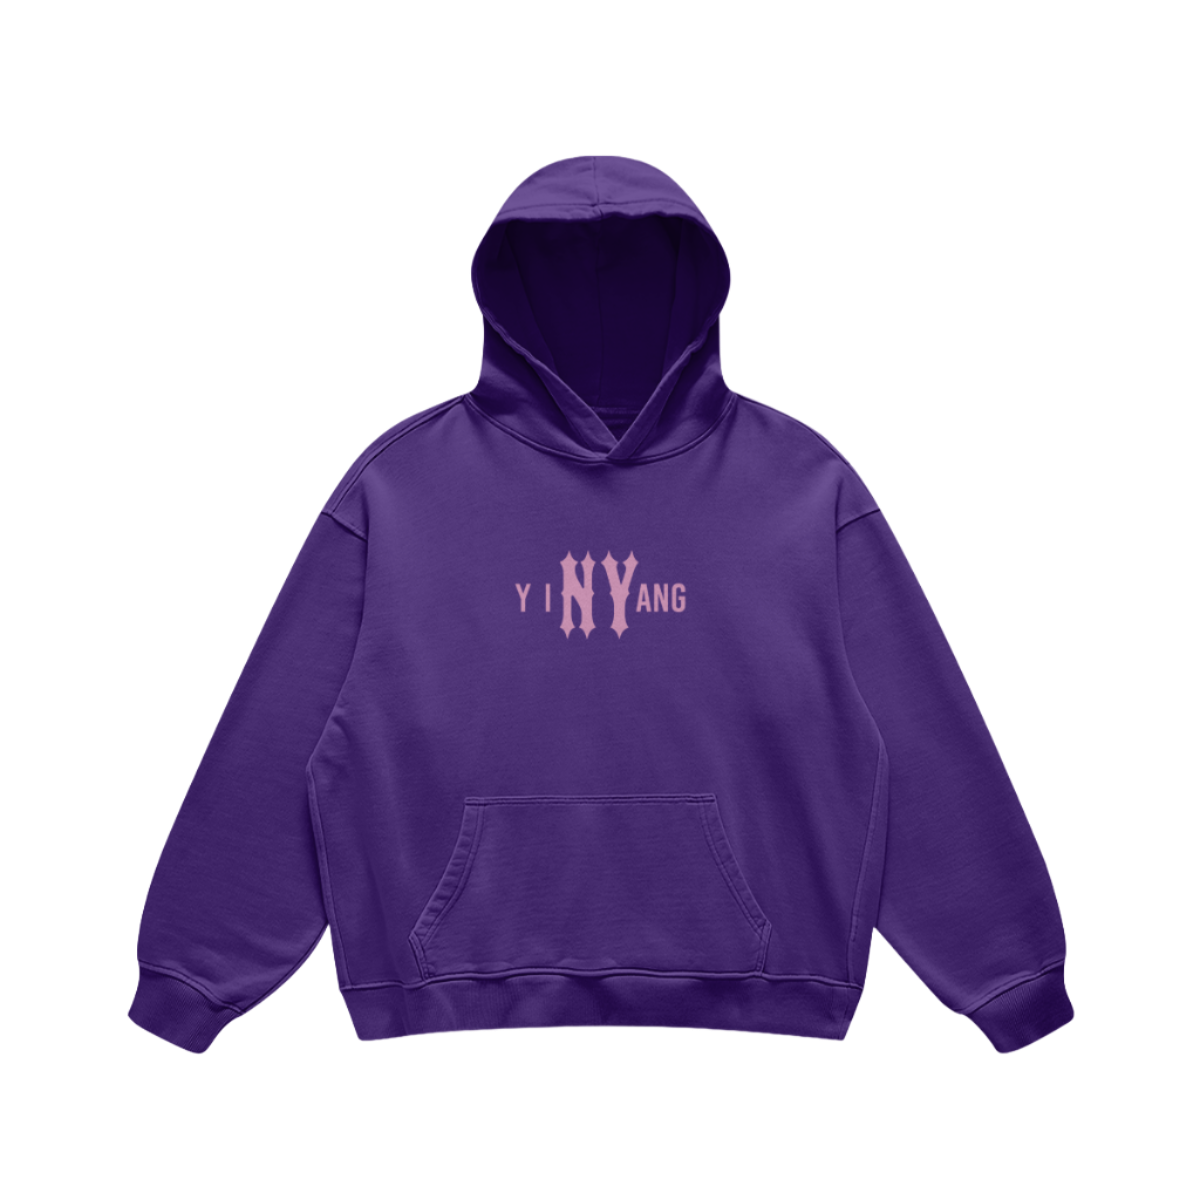 yiNYang Hoodie in Purple